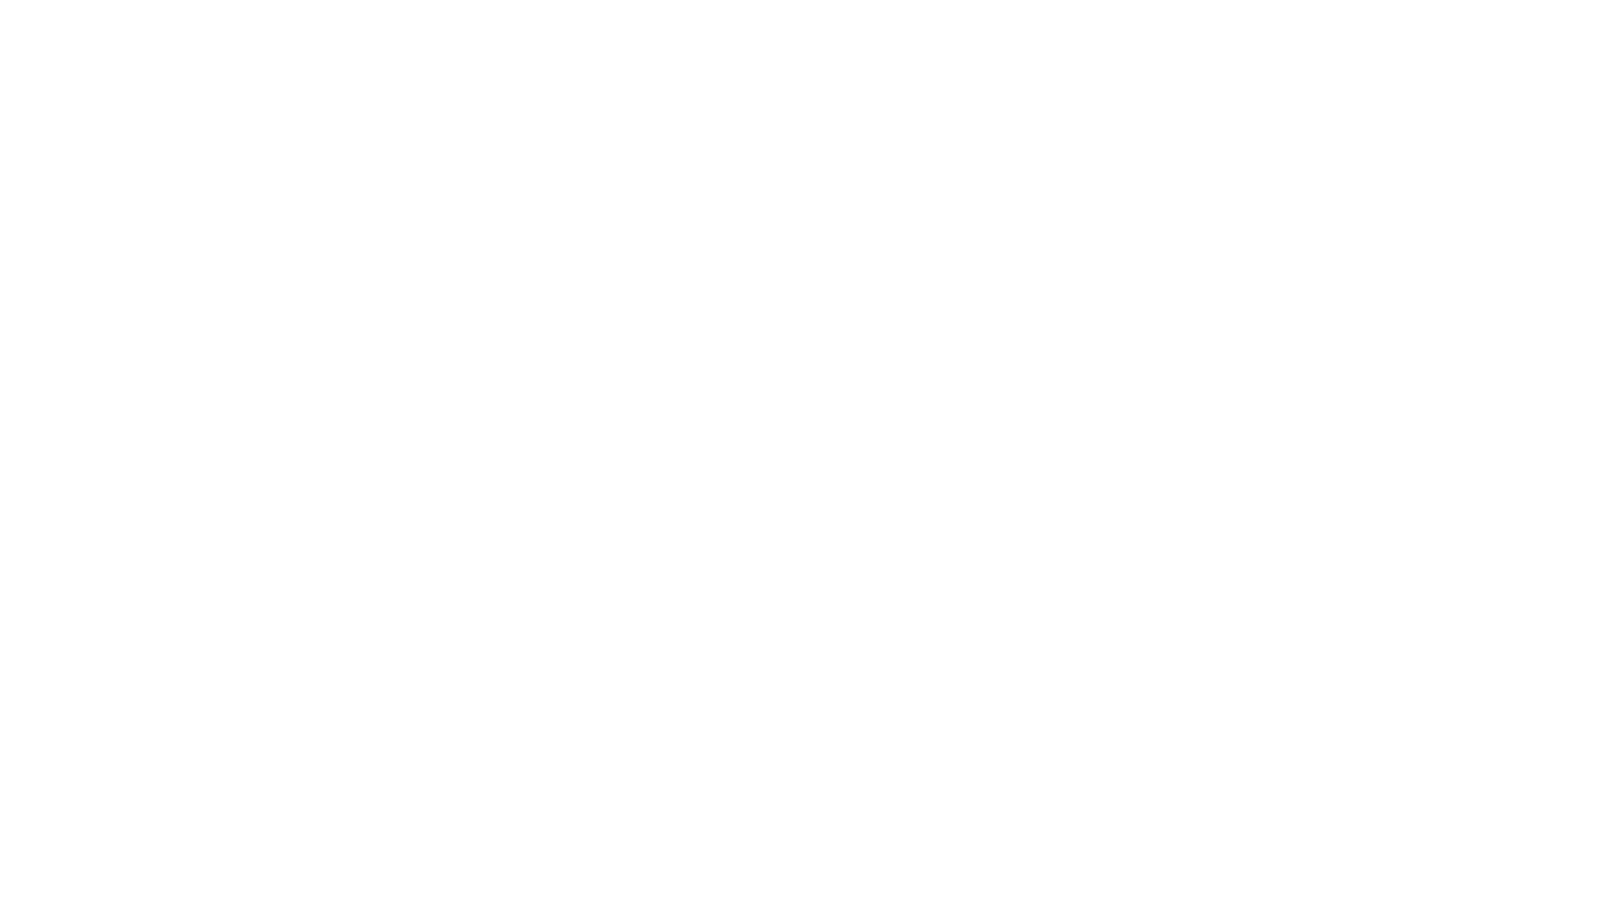 🇫🇷 Une prise “live” avec la dernière arrivé, la belle Charvel Pro-Mod HSH modèle 2021 et ses micros Seymour Duncan. Pour le son, les modèles Fender Princeton, JC-120 et Friedman BE de l’Axe-Fx III avec le Looper. Firmware 18.03. 😉🎸
🇺🇸 A live take with the latest arrival, the beautiful Charvel Pro-Mod HSH model 2021 and its Seymour Duncan pickups. For the sound, the Fender Princeton, JC-120 and Friedman BE models of the Axe-Fx III with the Looper. Firmware 18.03. 😉🎸

Preset Axe-Fx III / FM9 /FM3 : https://axechange.fractalaudio.com/detail.php?preset=9335   

"I Just Play" - la série : https://www.youtube.com/playlist?list=PLv5QgDvREXUkN6TpX0KrK6AZnSN-xwnEb  

N'oubliez pas de vous abonner ! Don't forget to subscribe 😉 
https://www.youtube.com/channel/UCaDOB3tLJVMi8zoiYF9hjrQ/?sub_confirmation=1  

➢ Web Site: https://nicolasdesmarest.com 
➢ Facebook: https://www.facebook.com/ndesmarest 
➢ Instagram: https://www.instagram.com/nicolas.desmarest 
➢ Twitter: https://twitter.com/ndesmarest 
➢ YouTube: https://www.youtube.com/user/NDESMAREST 

#axefx3 #shimmer #looperimpro